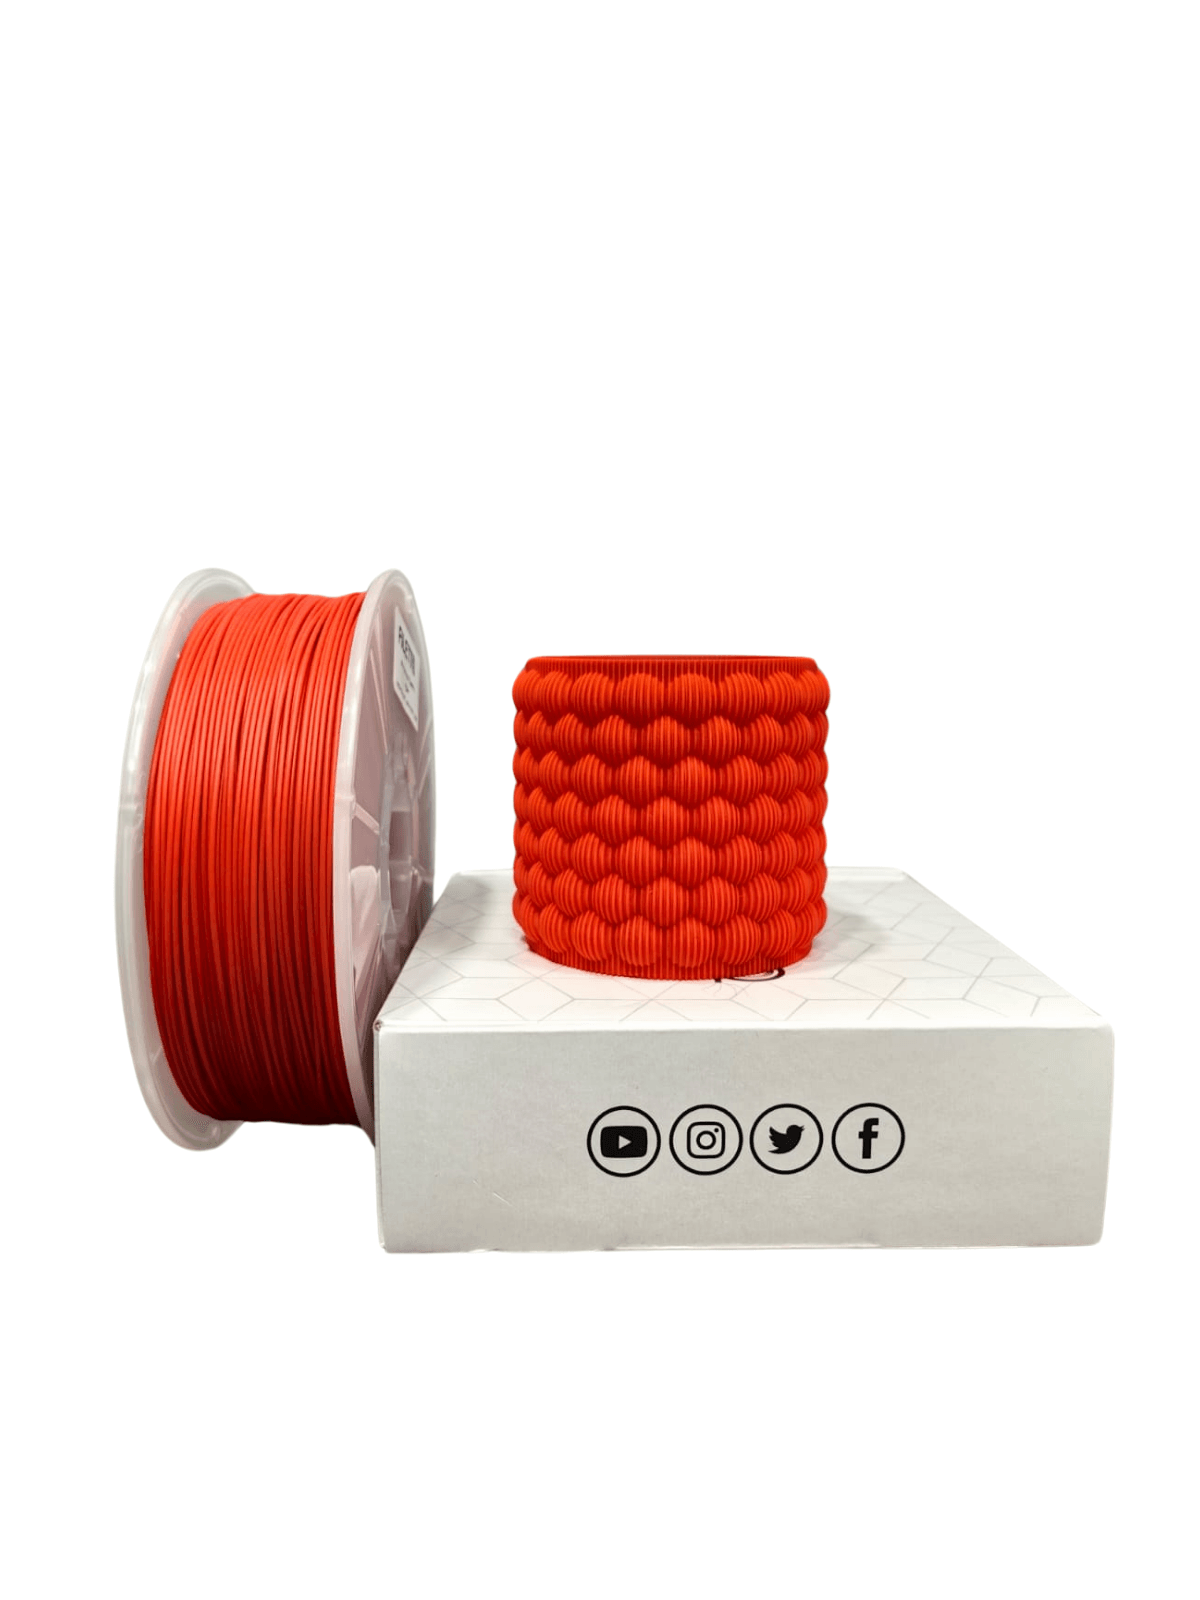 Filetto Pla+ Filament 1.75mm 1KG - Red